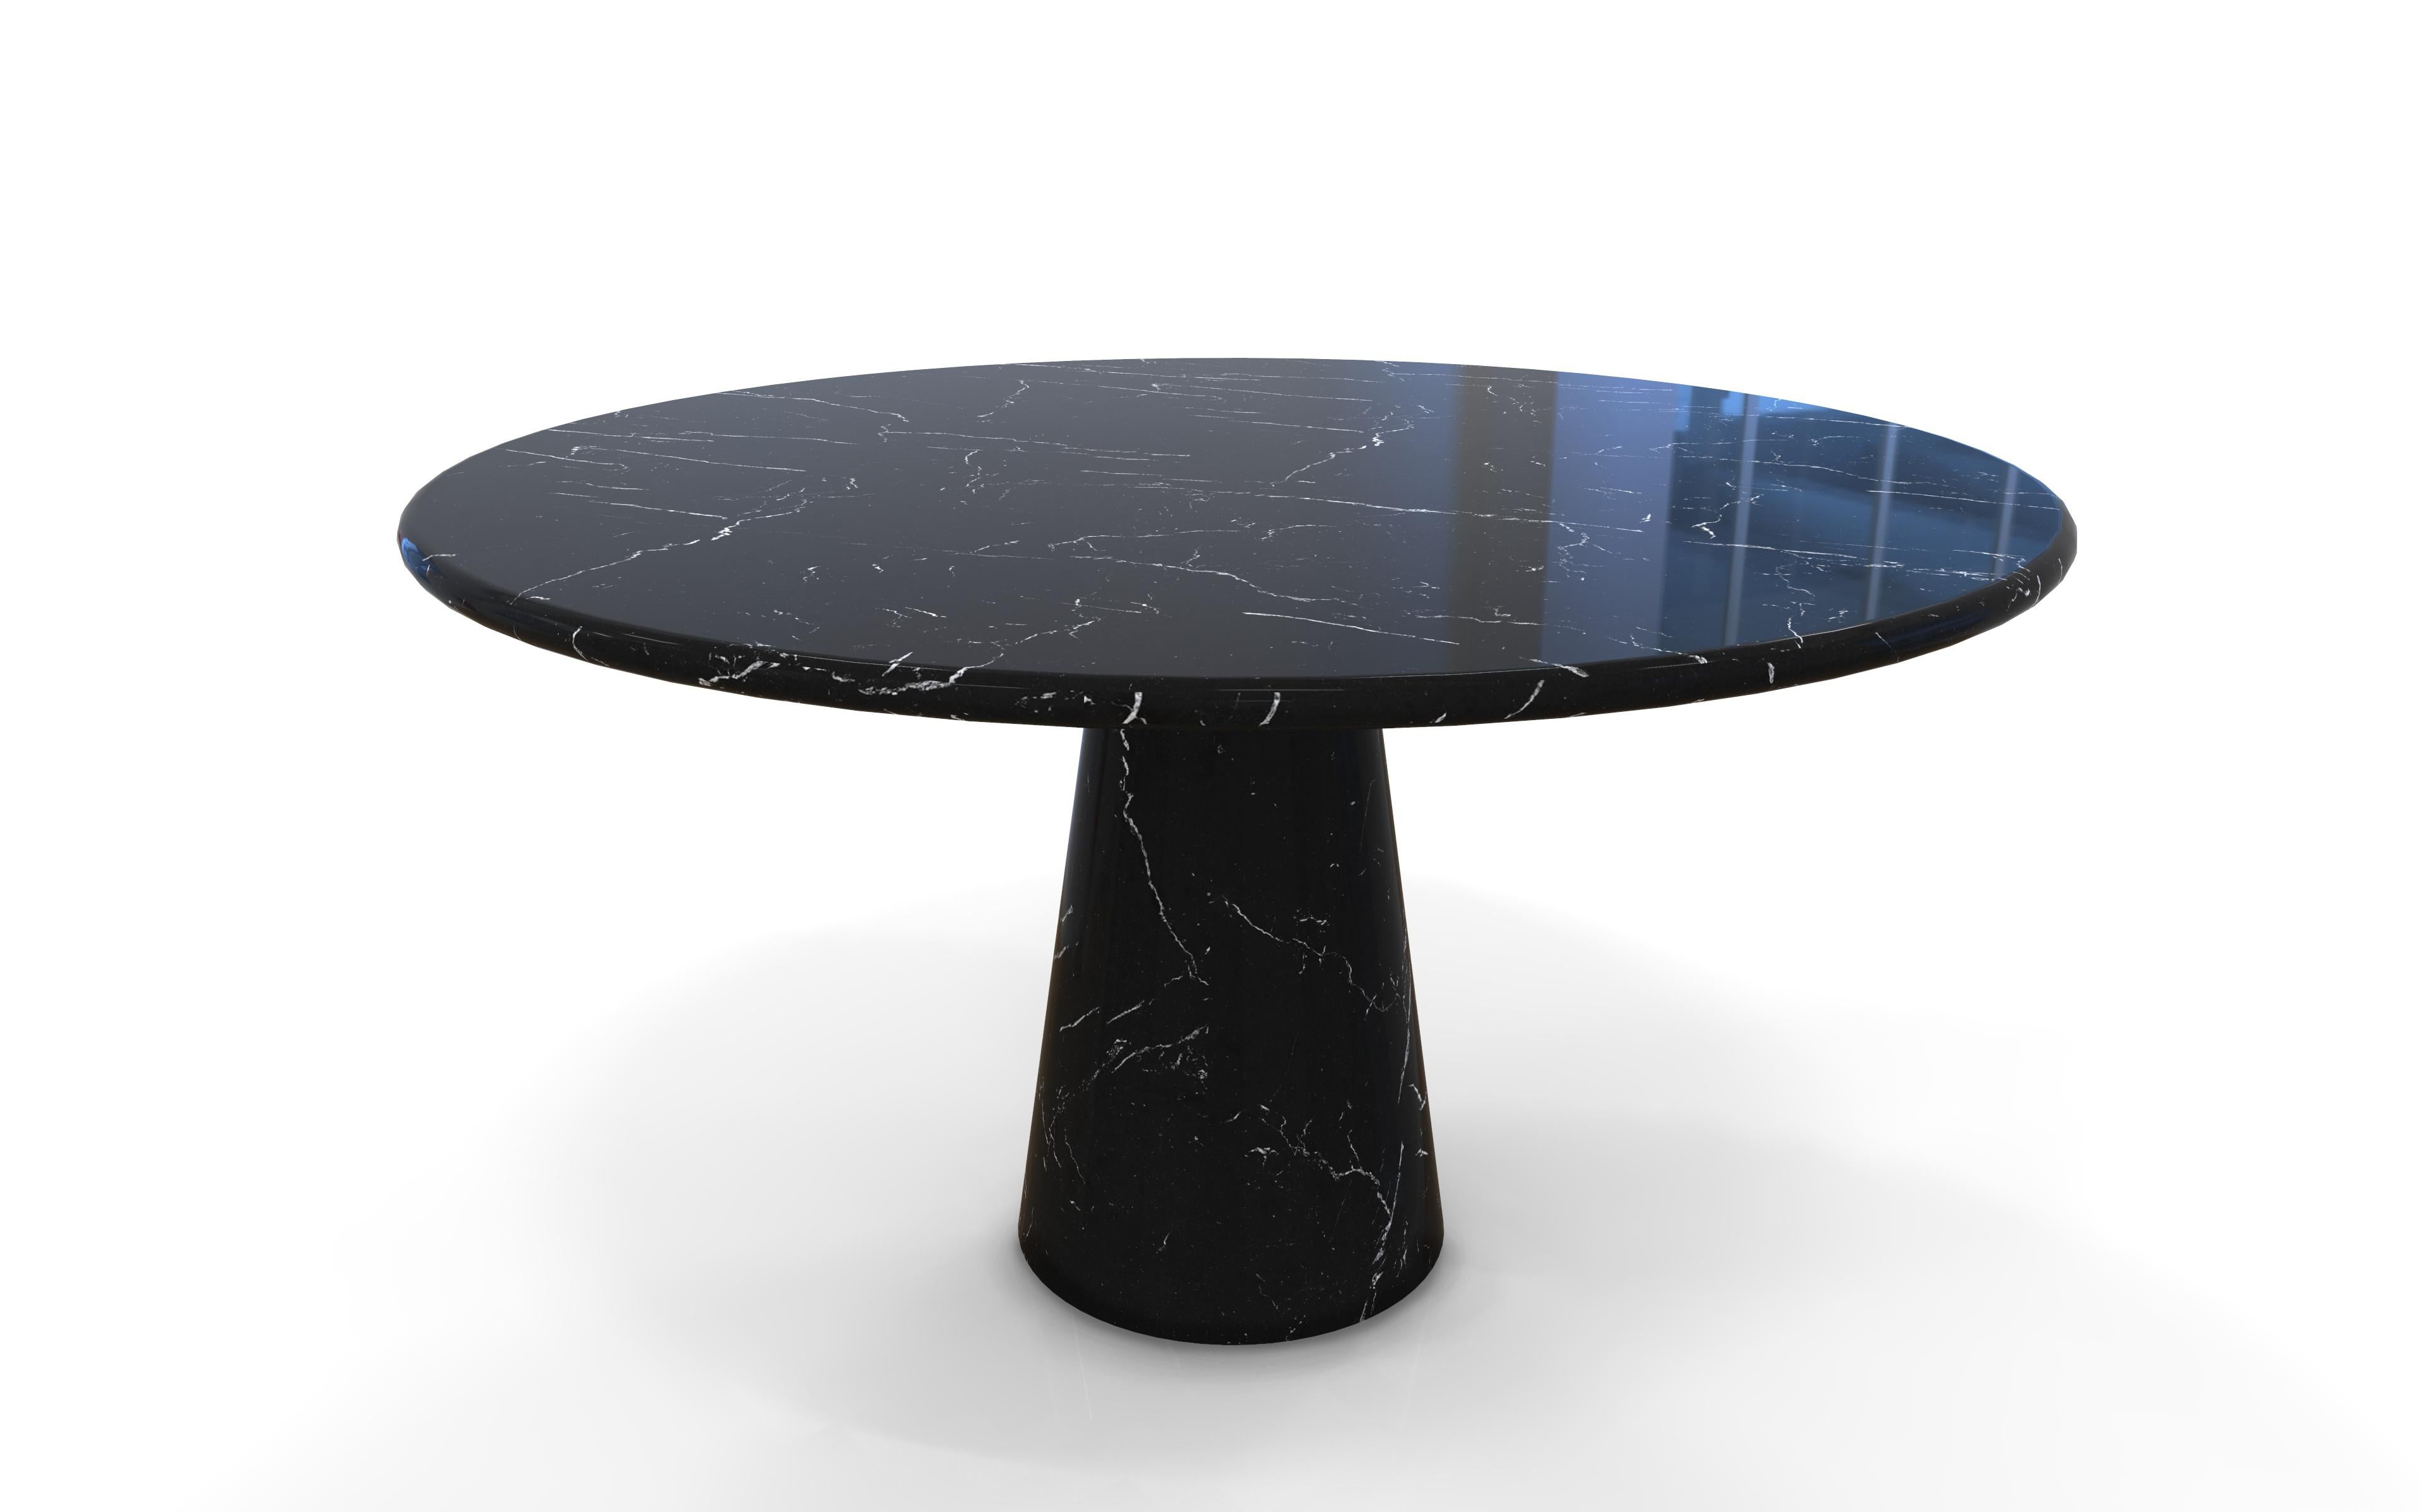 Nom : Colonnata
Table ronde en marbre avec base conique. La version travertin a une base avec une finition texturée et une surface polie.
Taille : Diamètre 130 x hauteur 72
Matériaux : Carrara blanc, Marquina noir, Pennsylvanie blanc, Travertin